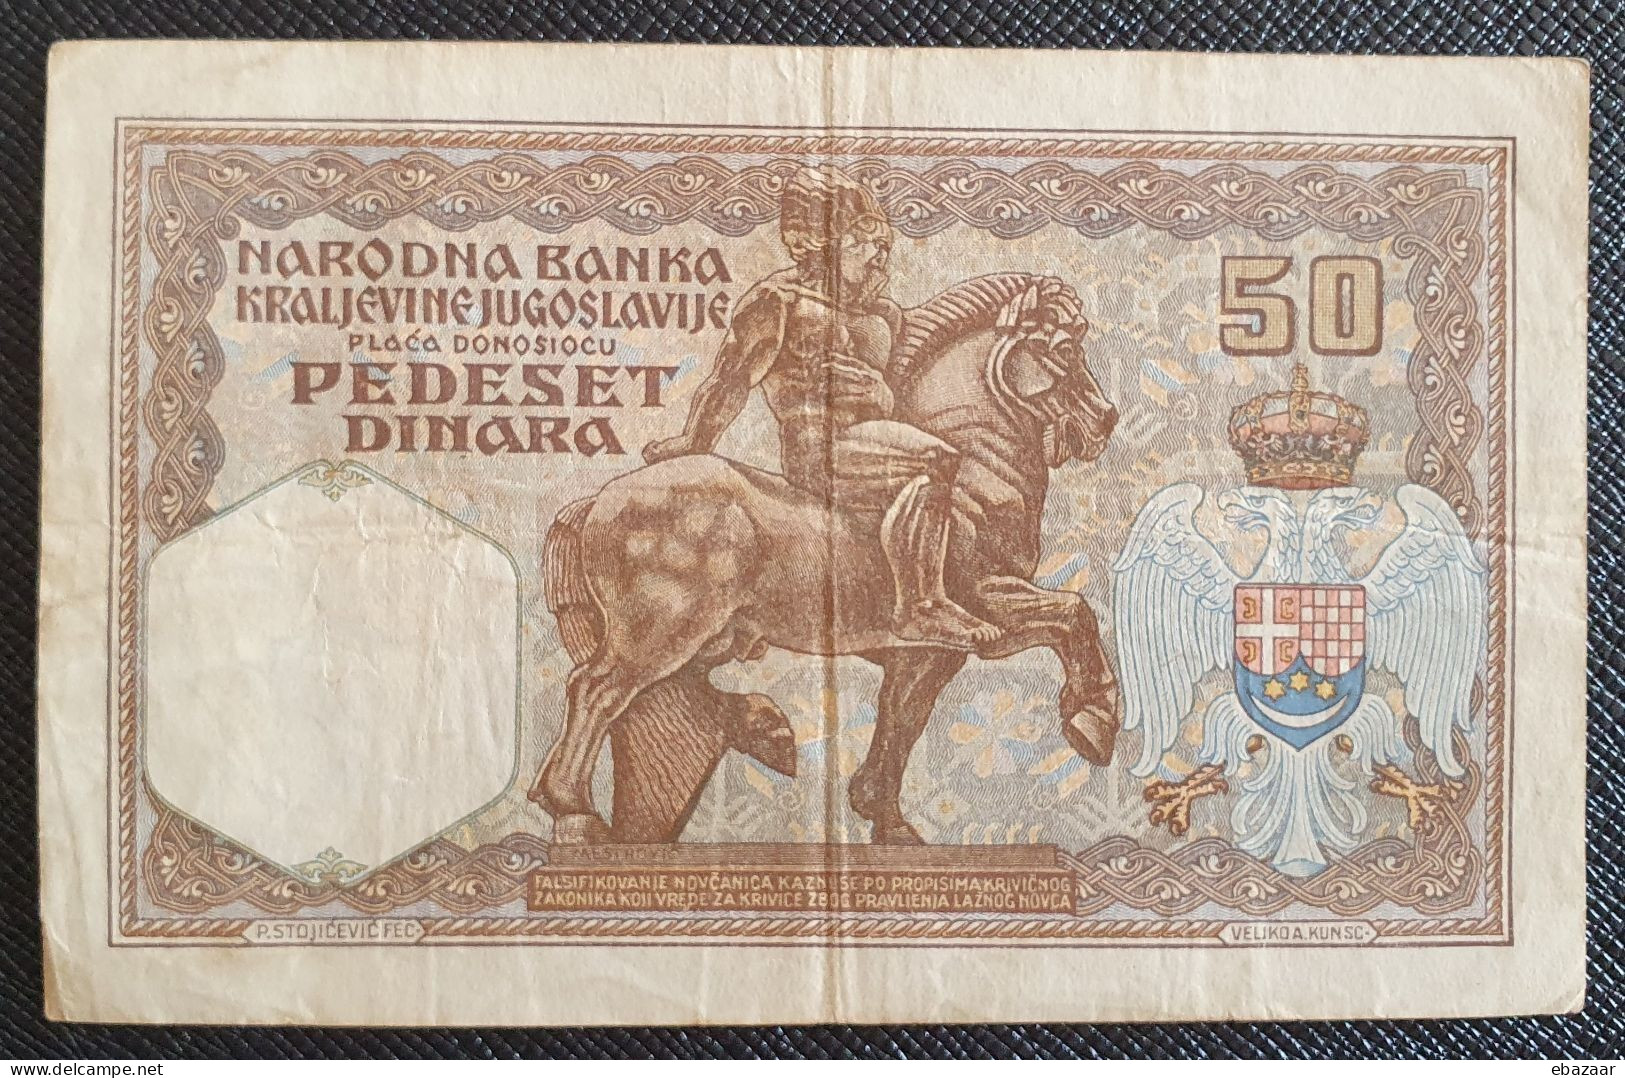 Yugoslavia 1931 (Narodna Banka Kraljevine Jugoslavije) 50 Dinara Banknote P-28 Circulated + FREE GIFT - Yougoslavie